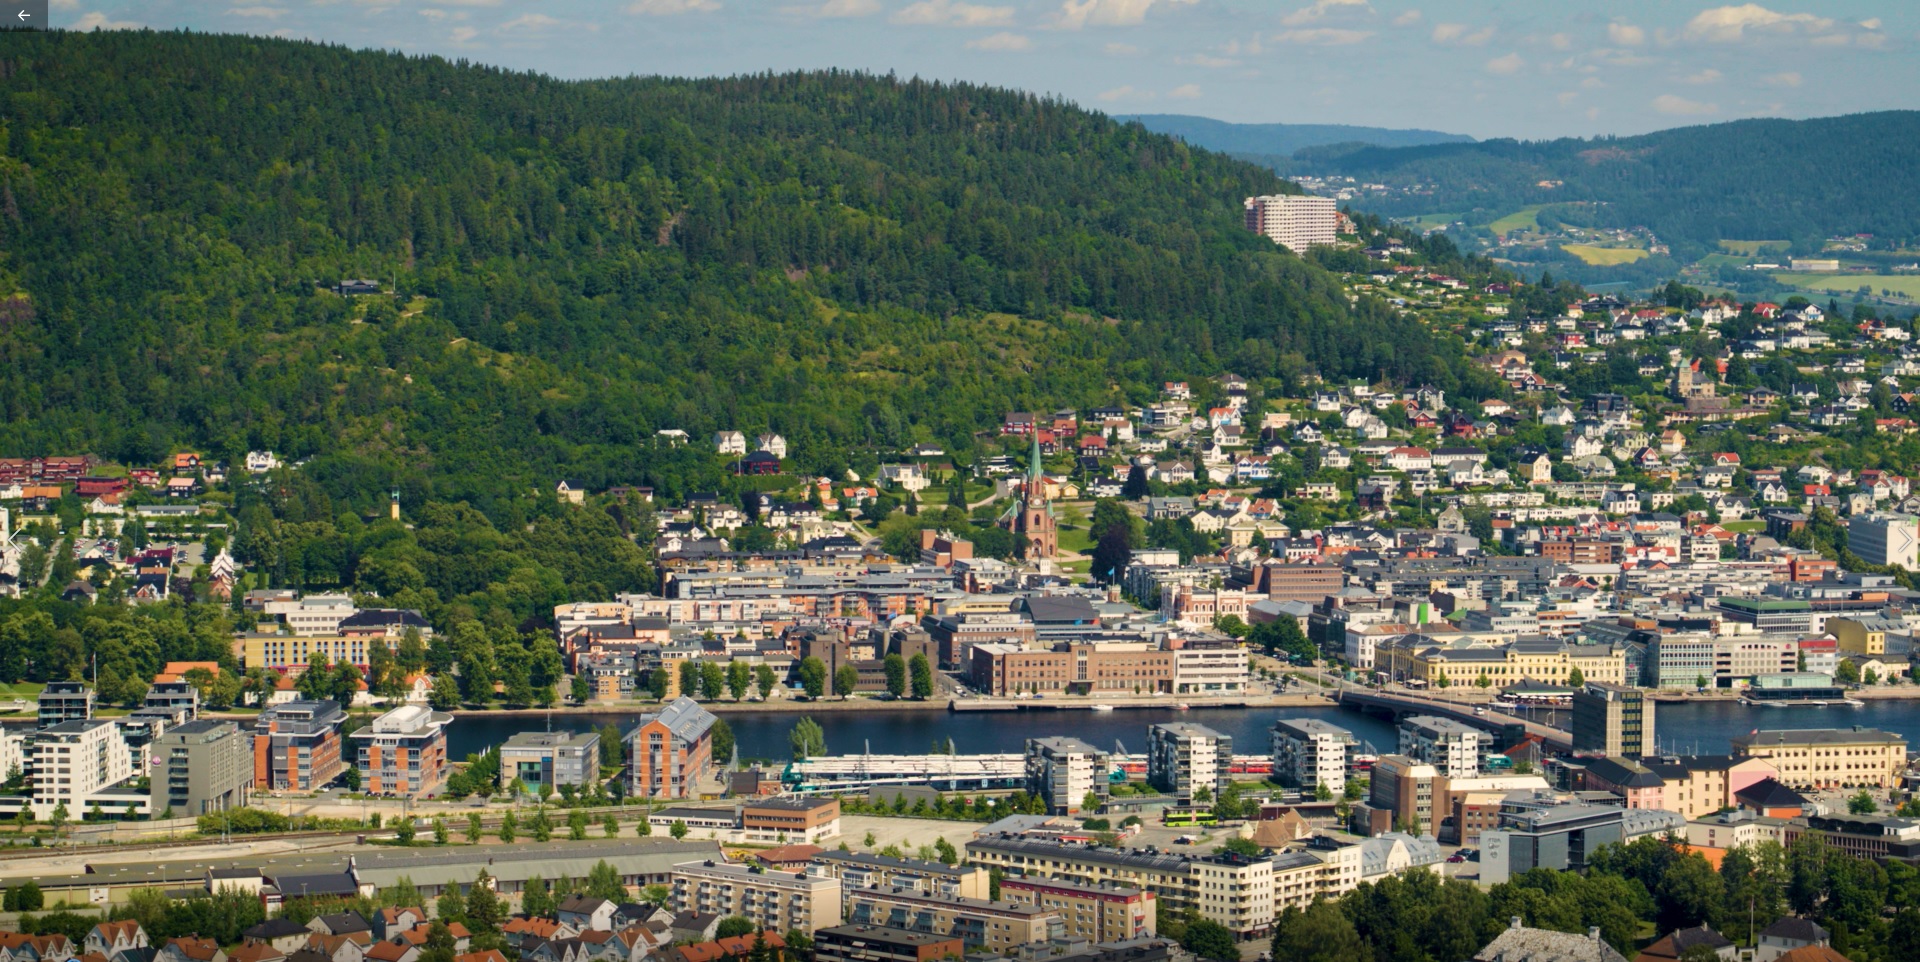 The UDK02 Drammen-Kobbervikdalen project Trevi spa